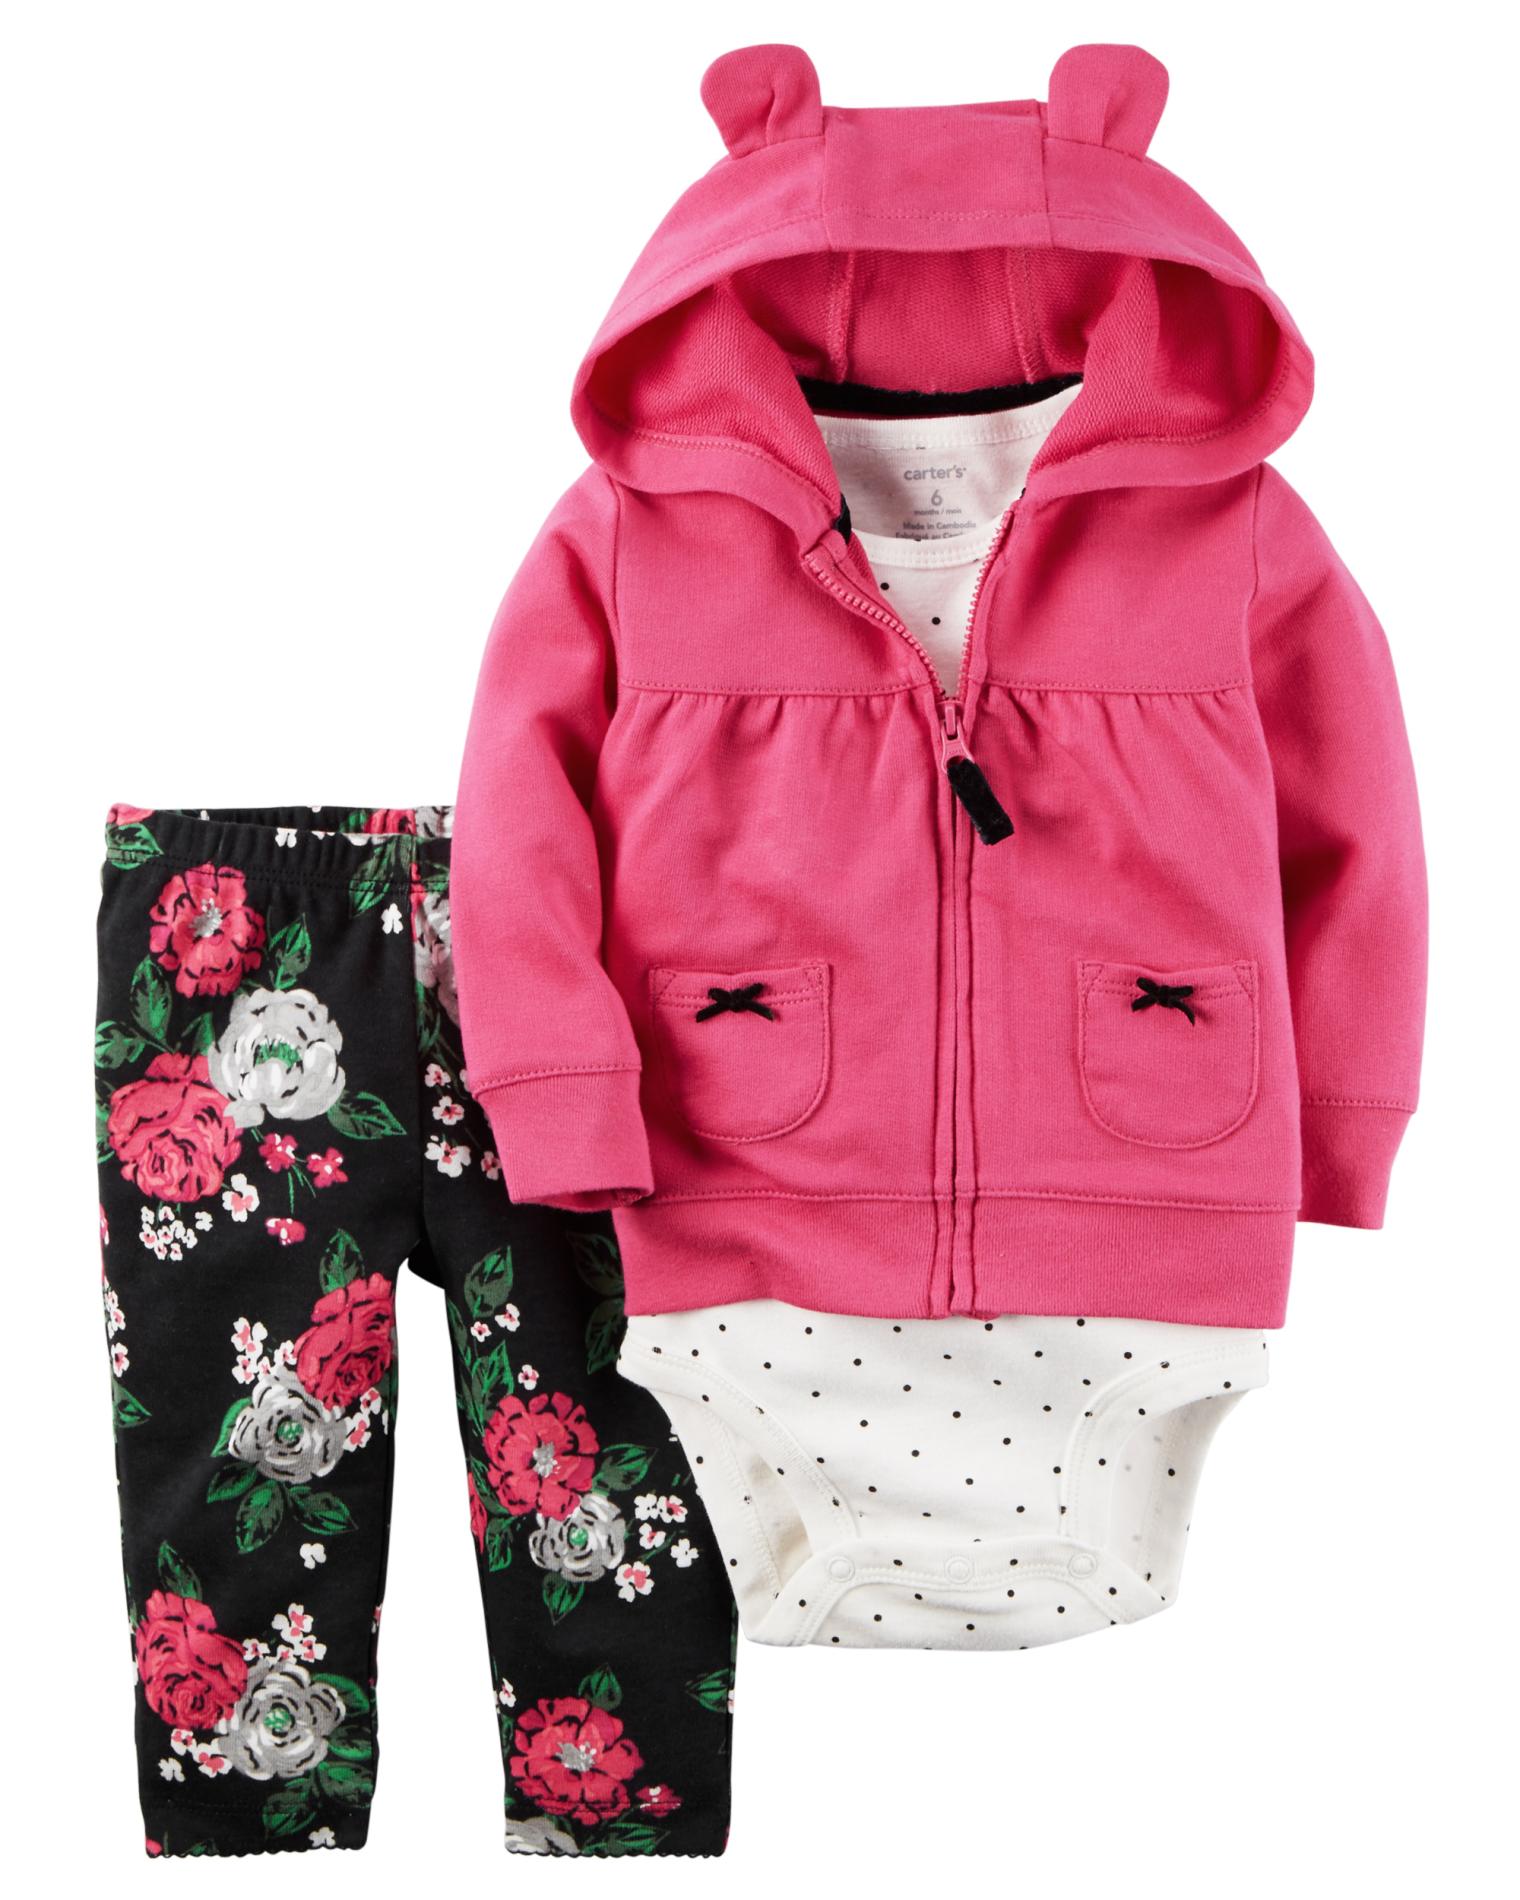 Carter's Newborn & Infant Girls' Hooded Jacket, Bodysuit & Pants - Floral